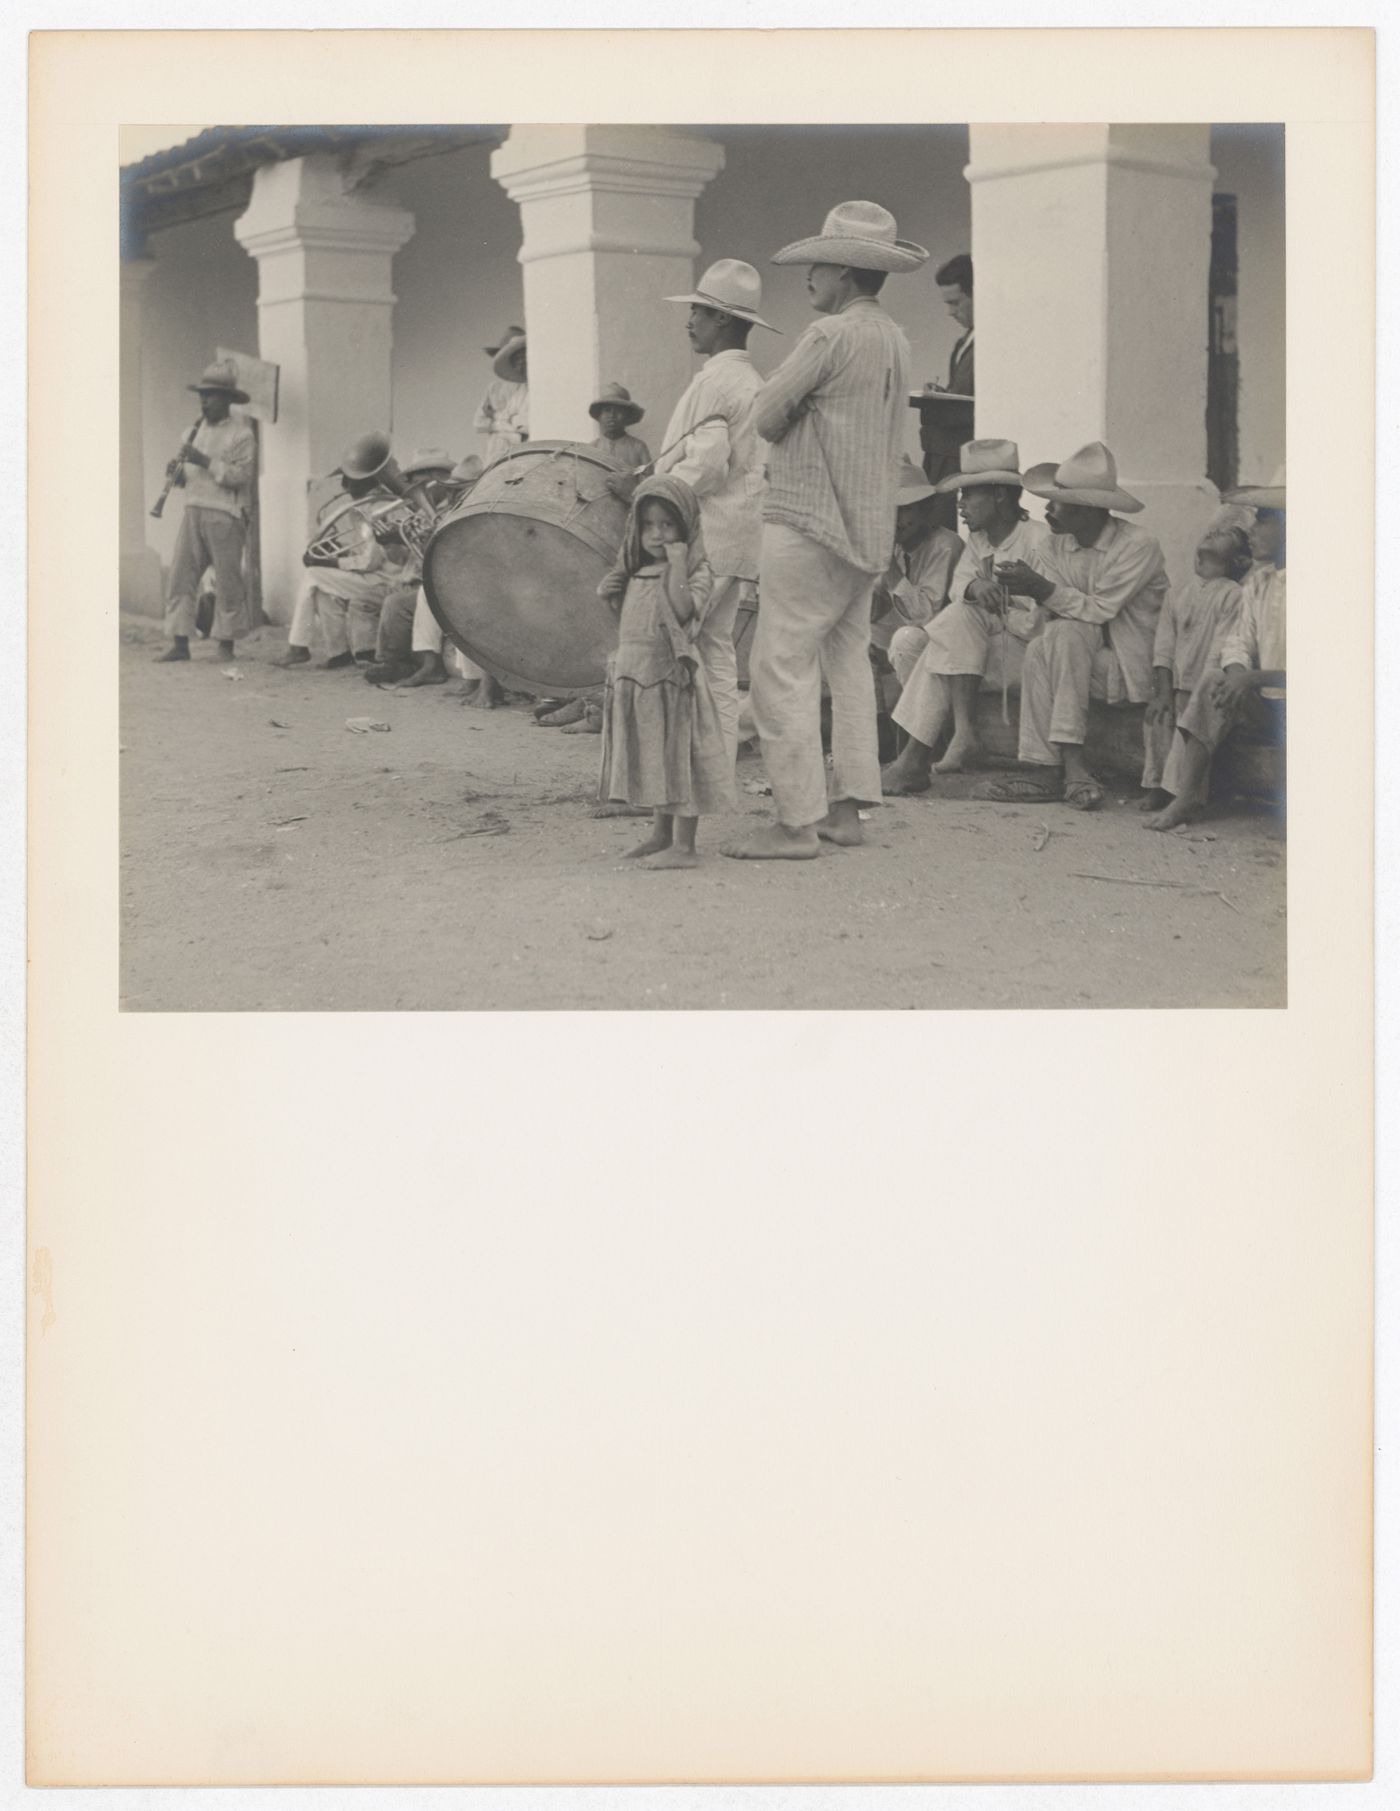 View of a men with musical instruments, Plume Dance, Oaxaca de Juárez, Mexico